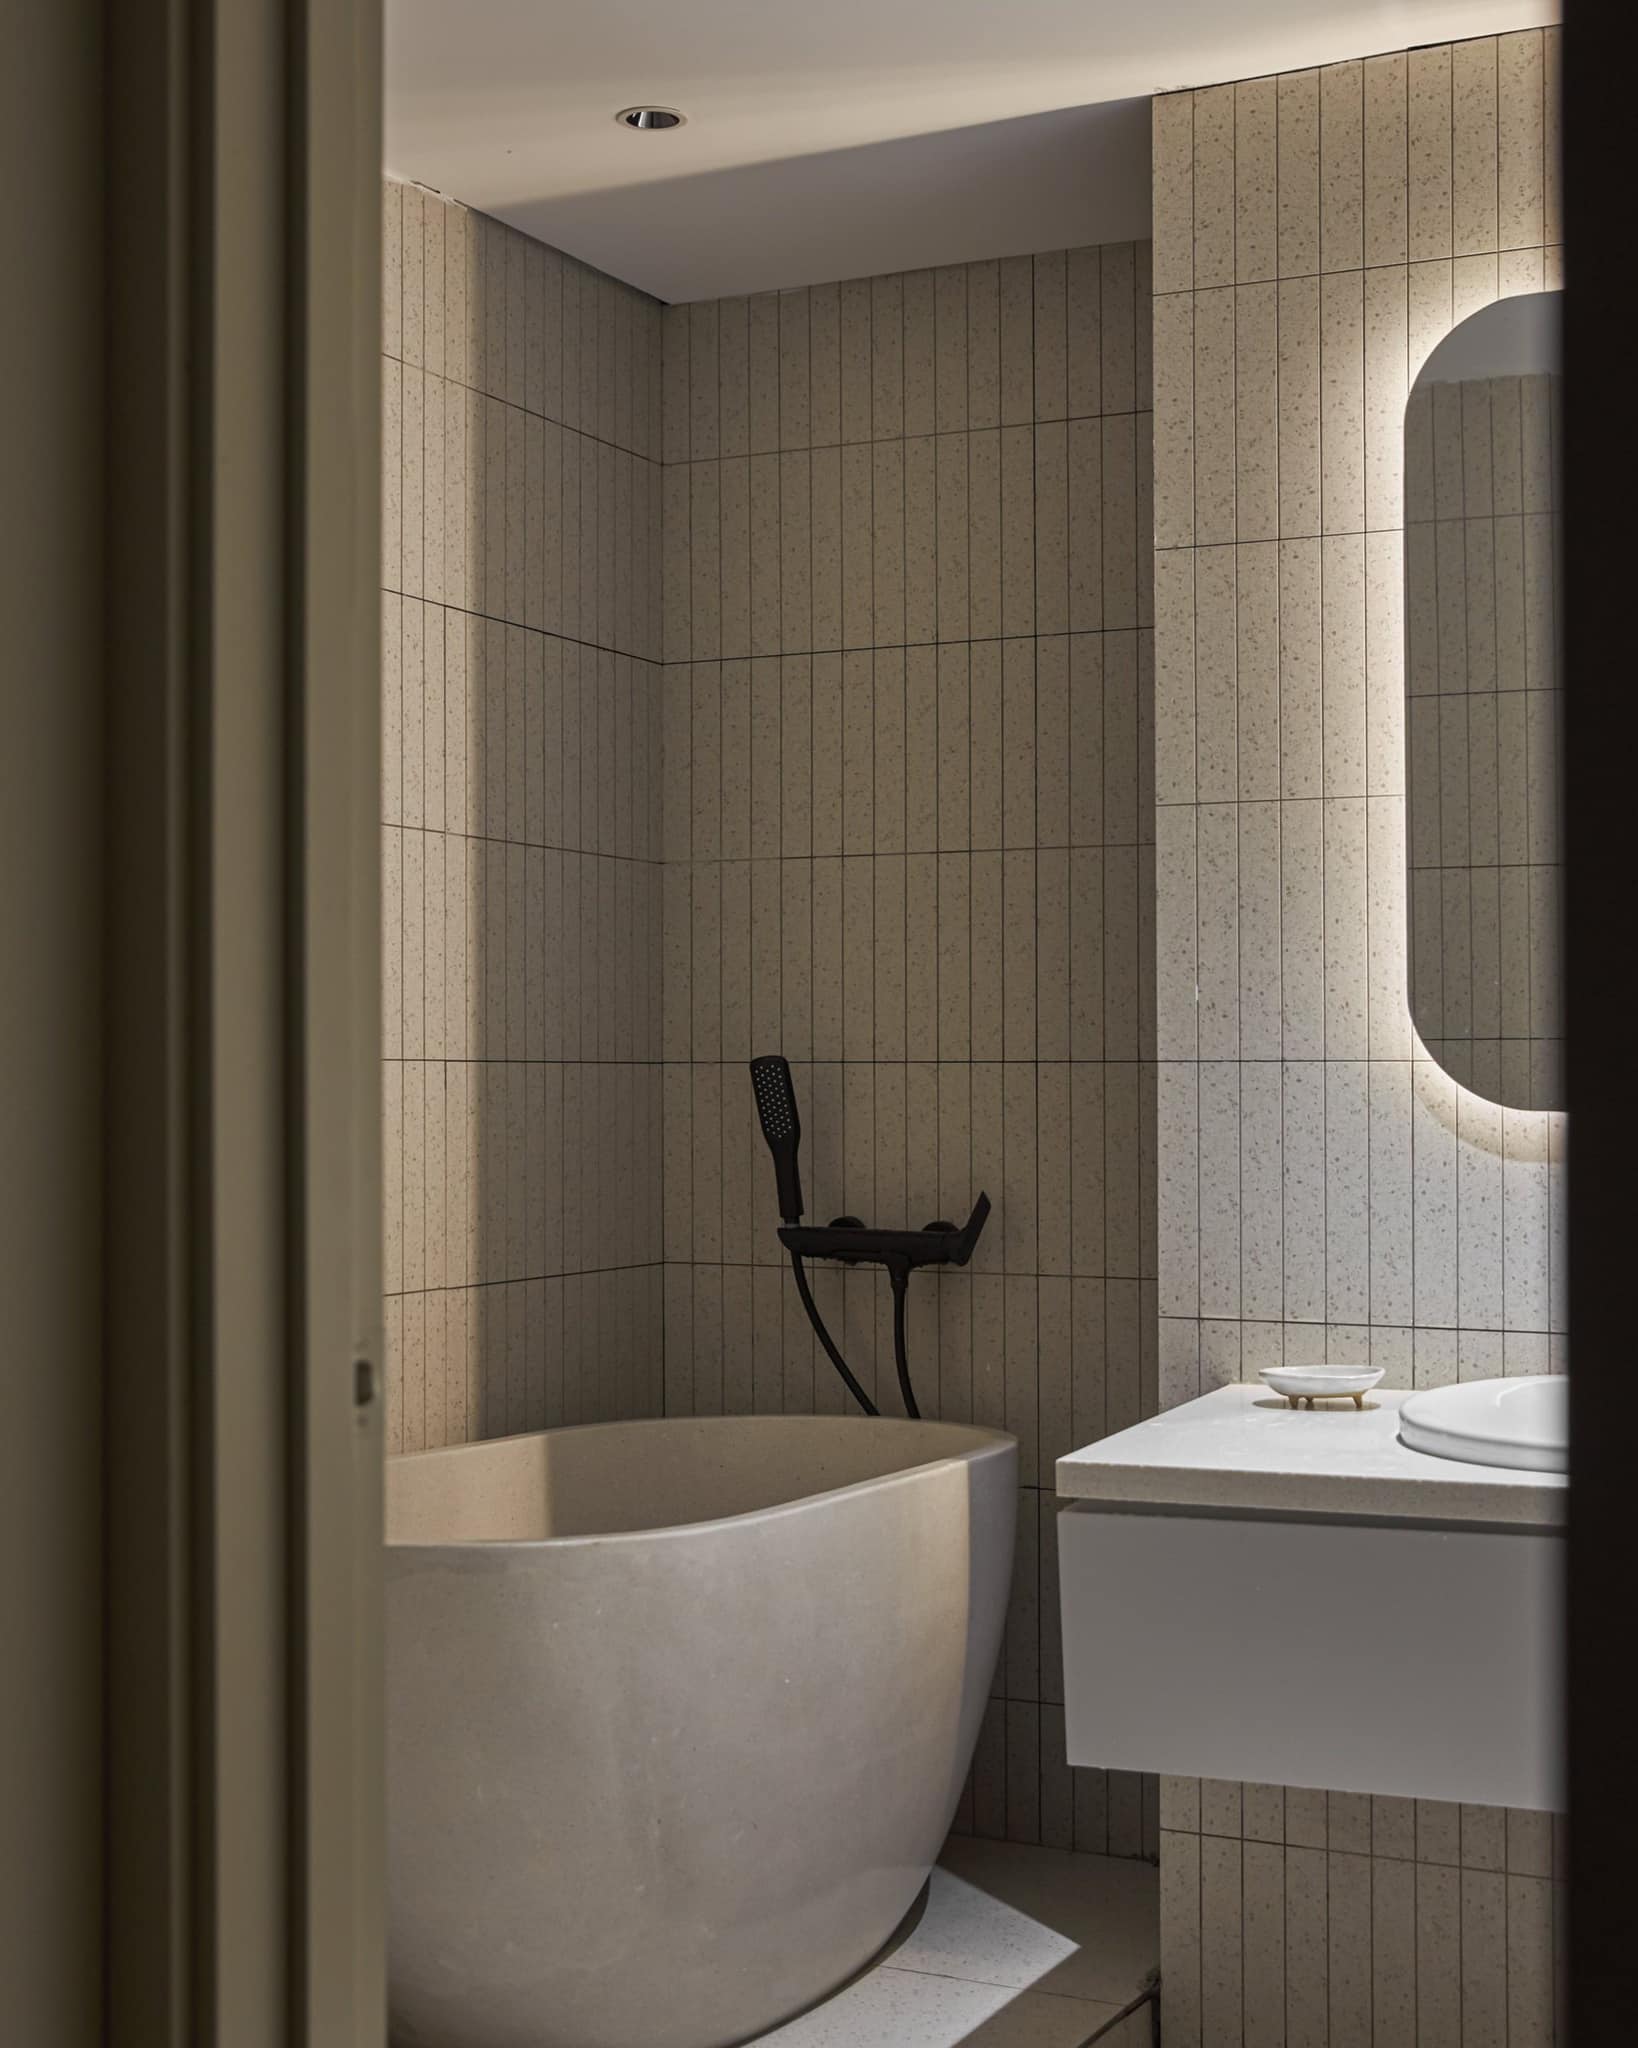 Phòng vệ sinh sau khi được cải tạo cũng rộng hơn và có thể kê được một chiếc bồn tắm nhỏ, hợp với sở thích của Kiều Anh.